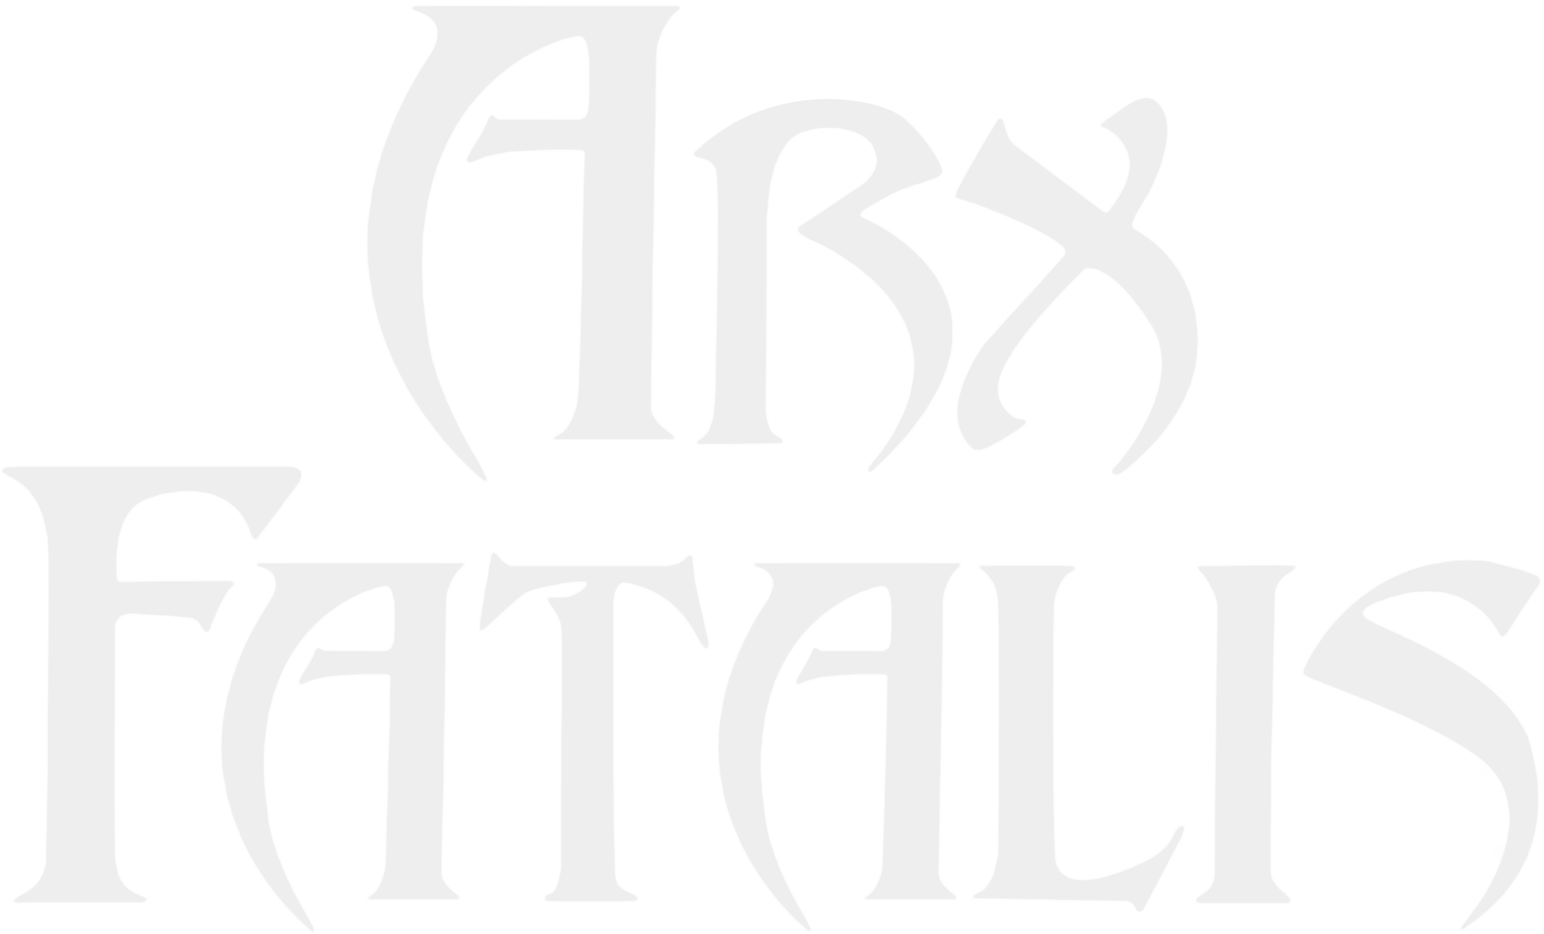 Arx Fatalis